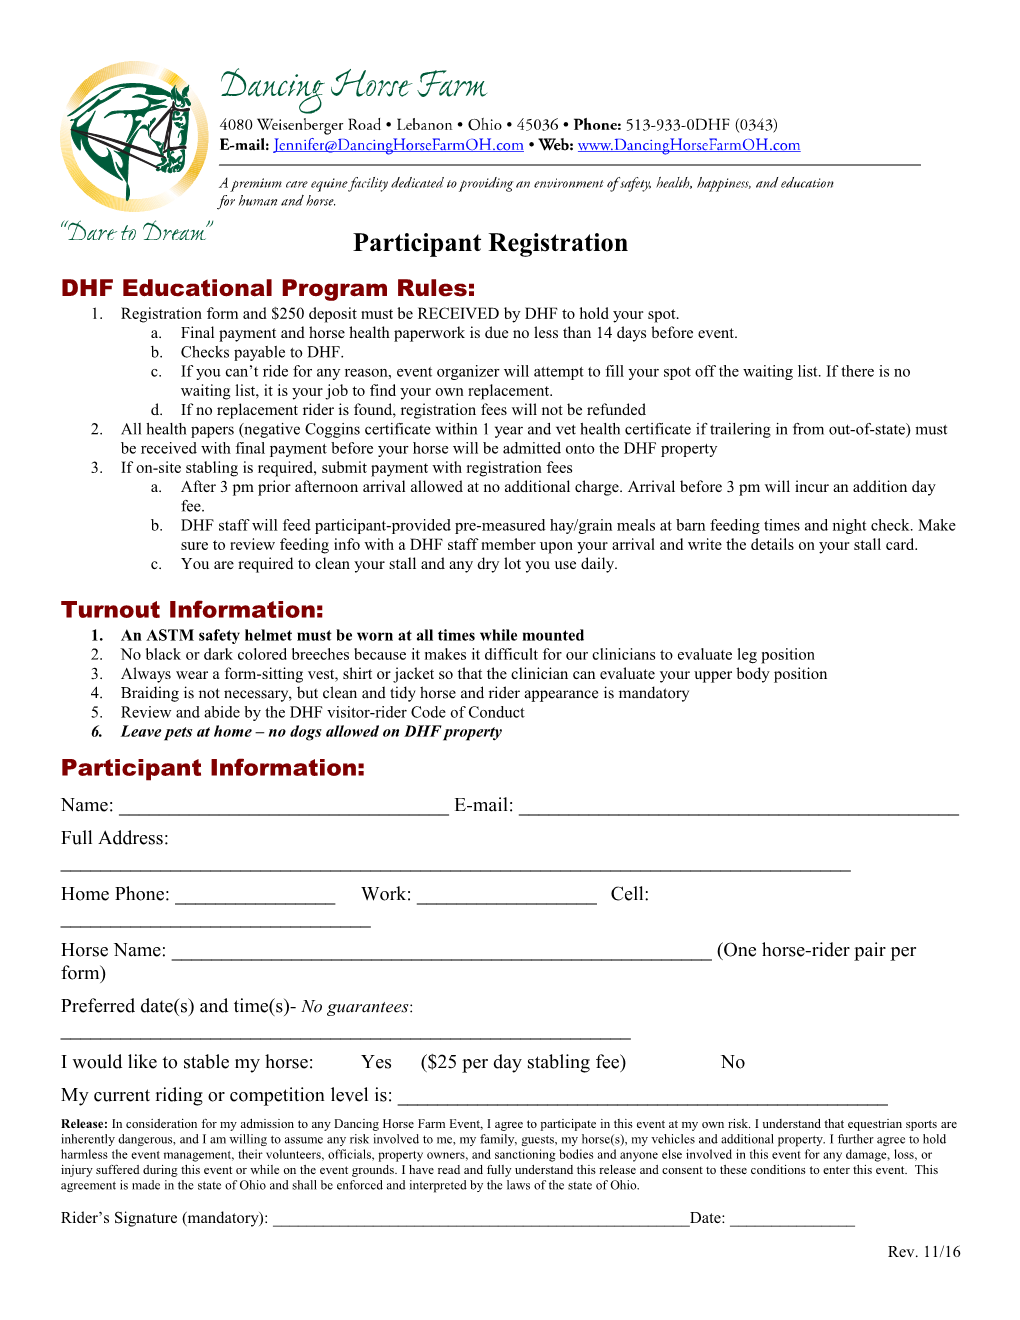 Participant Registration Sheet